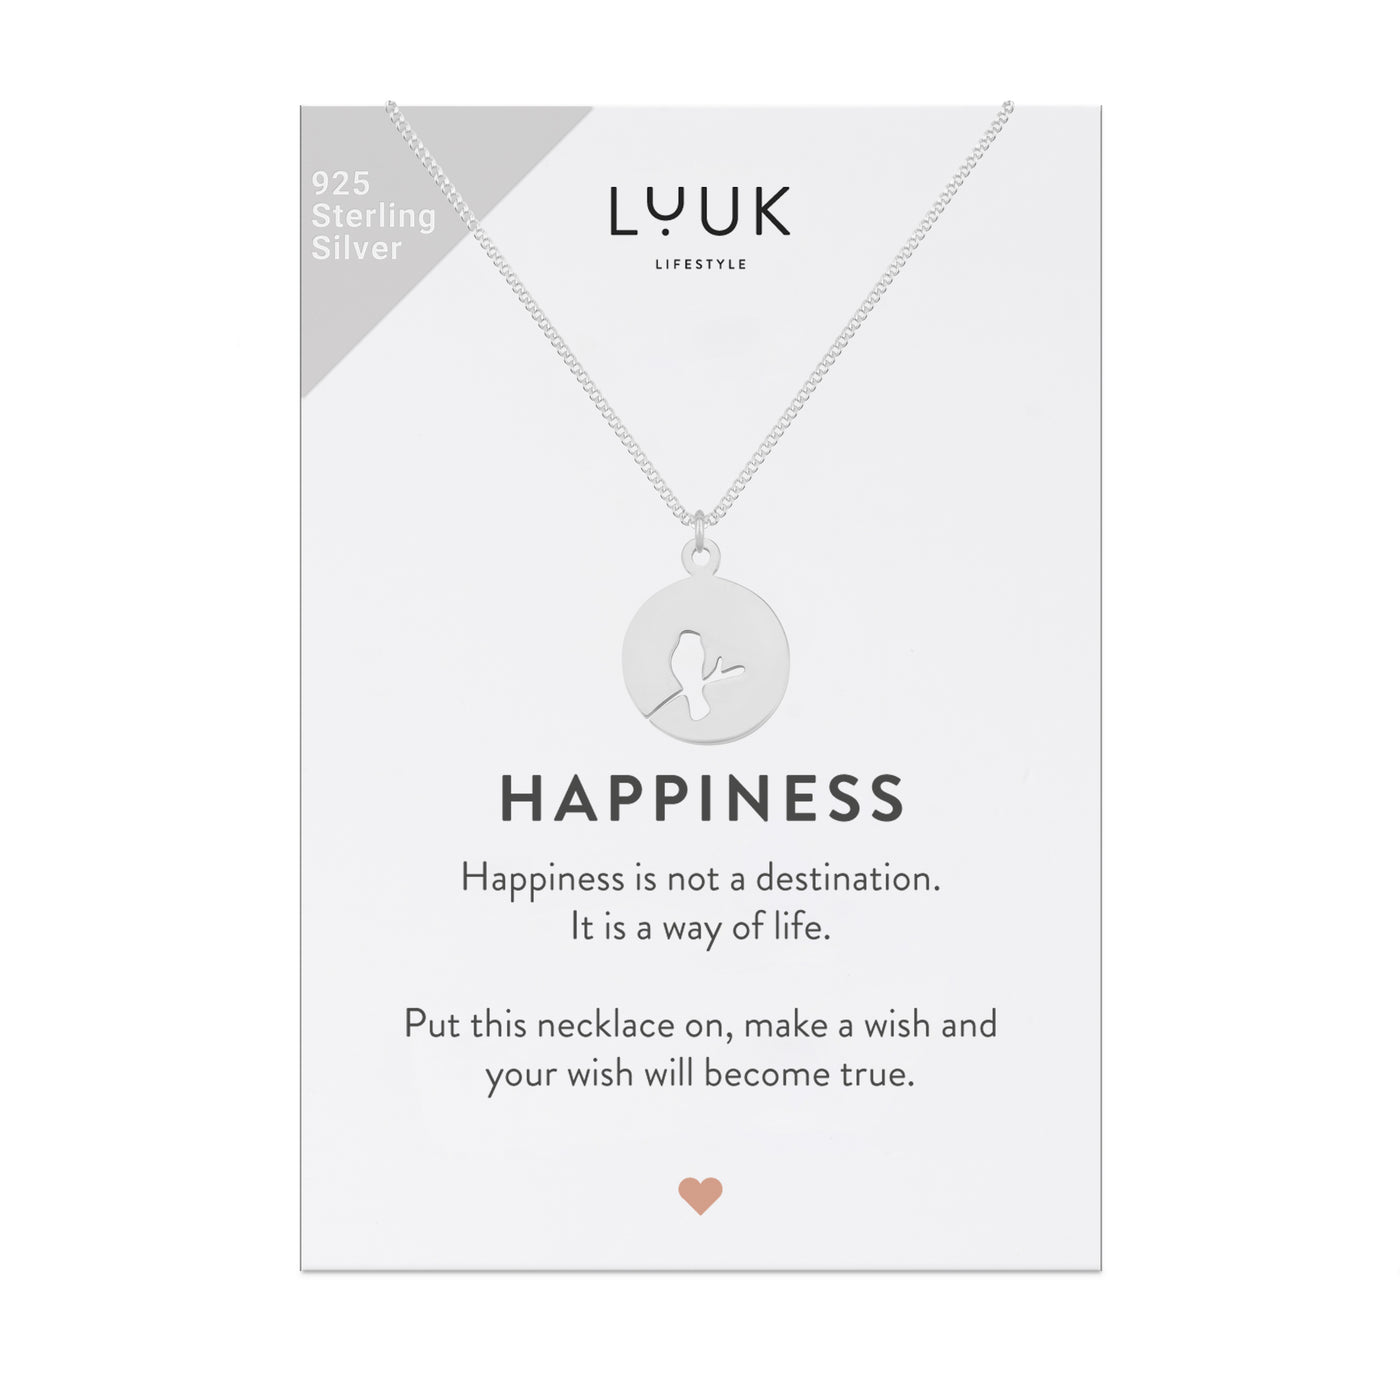 Silberne Halskette mit Amsel Anhänger auf Happiness Karte von der Marke Luuk Lifestyle 